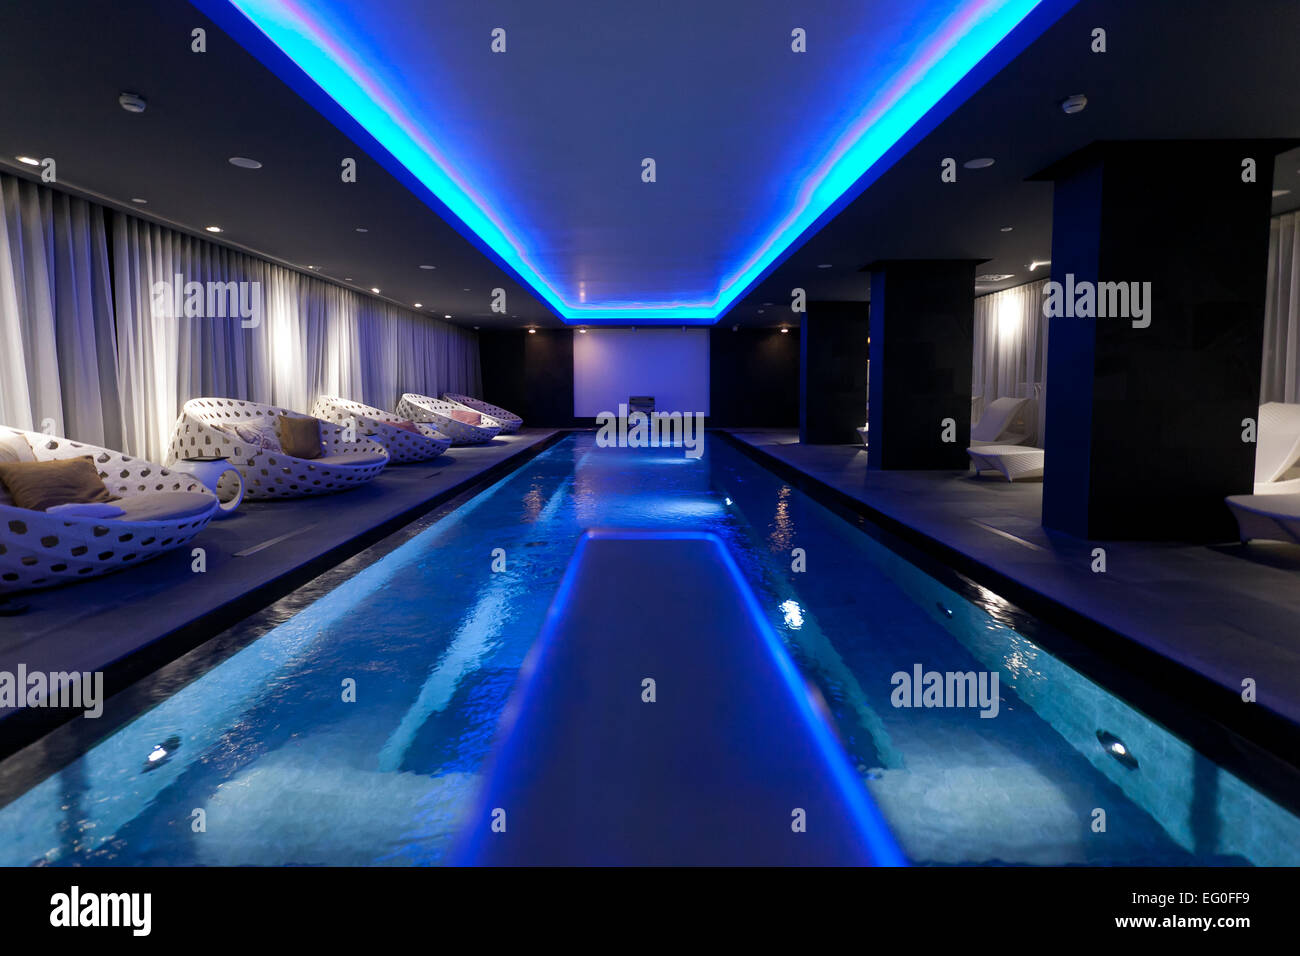 L'interieur d'un club de bien-être et spa avec une piscine intérieure illuminée en lumière bleue, photo : le 29 mars 2012. Banque D'Images